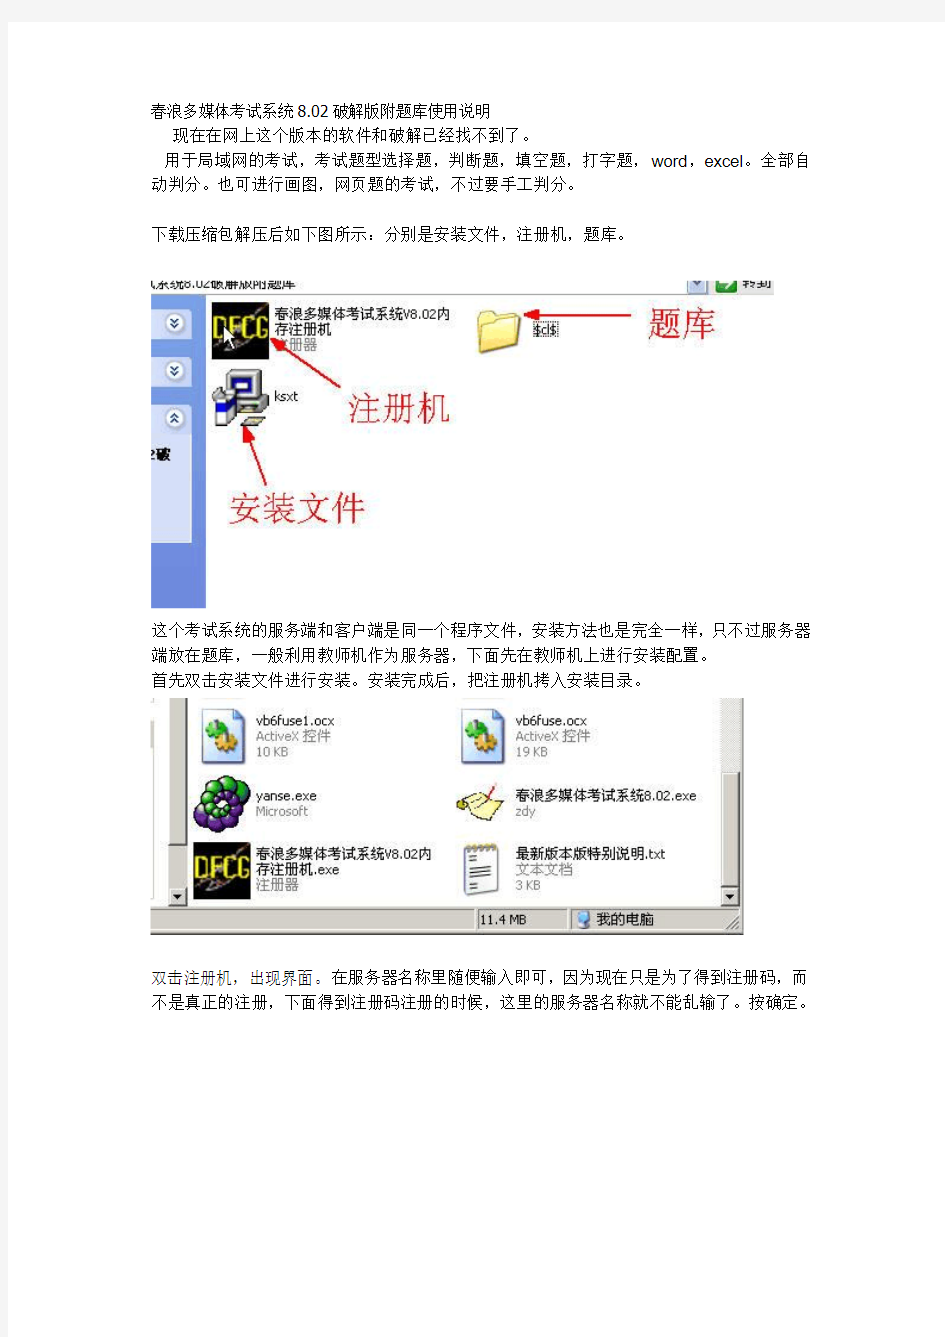 春浪多媒体考试系统8.02破解版附题库